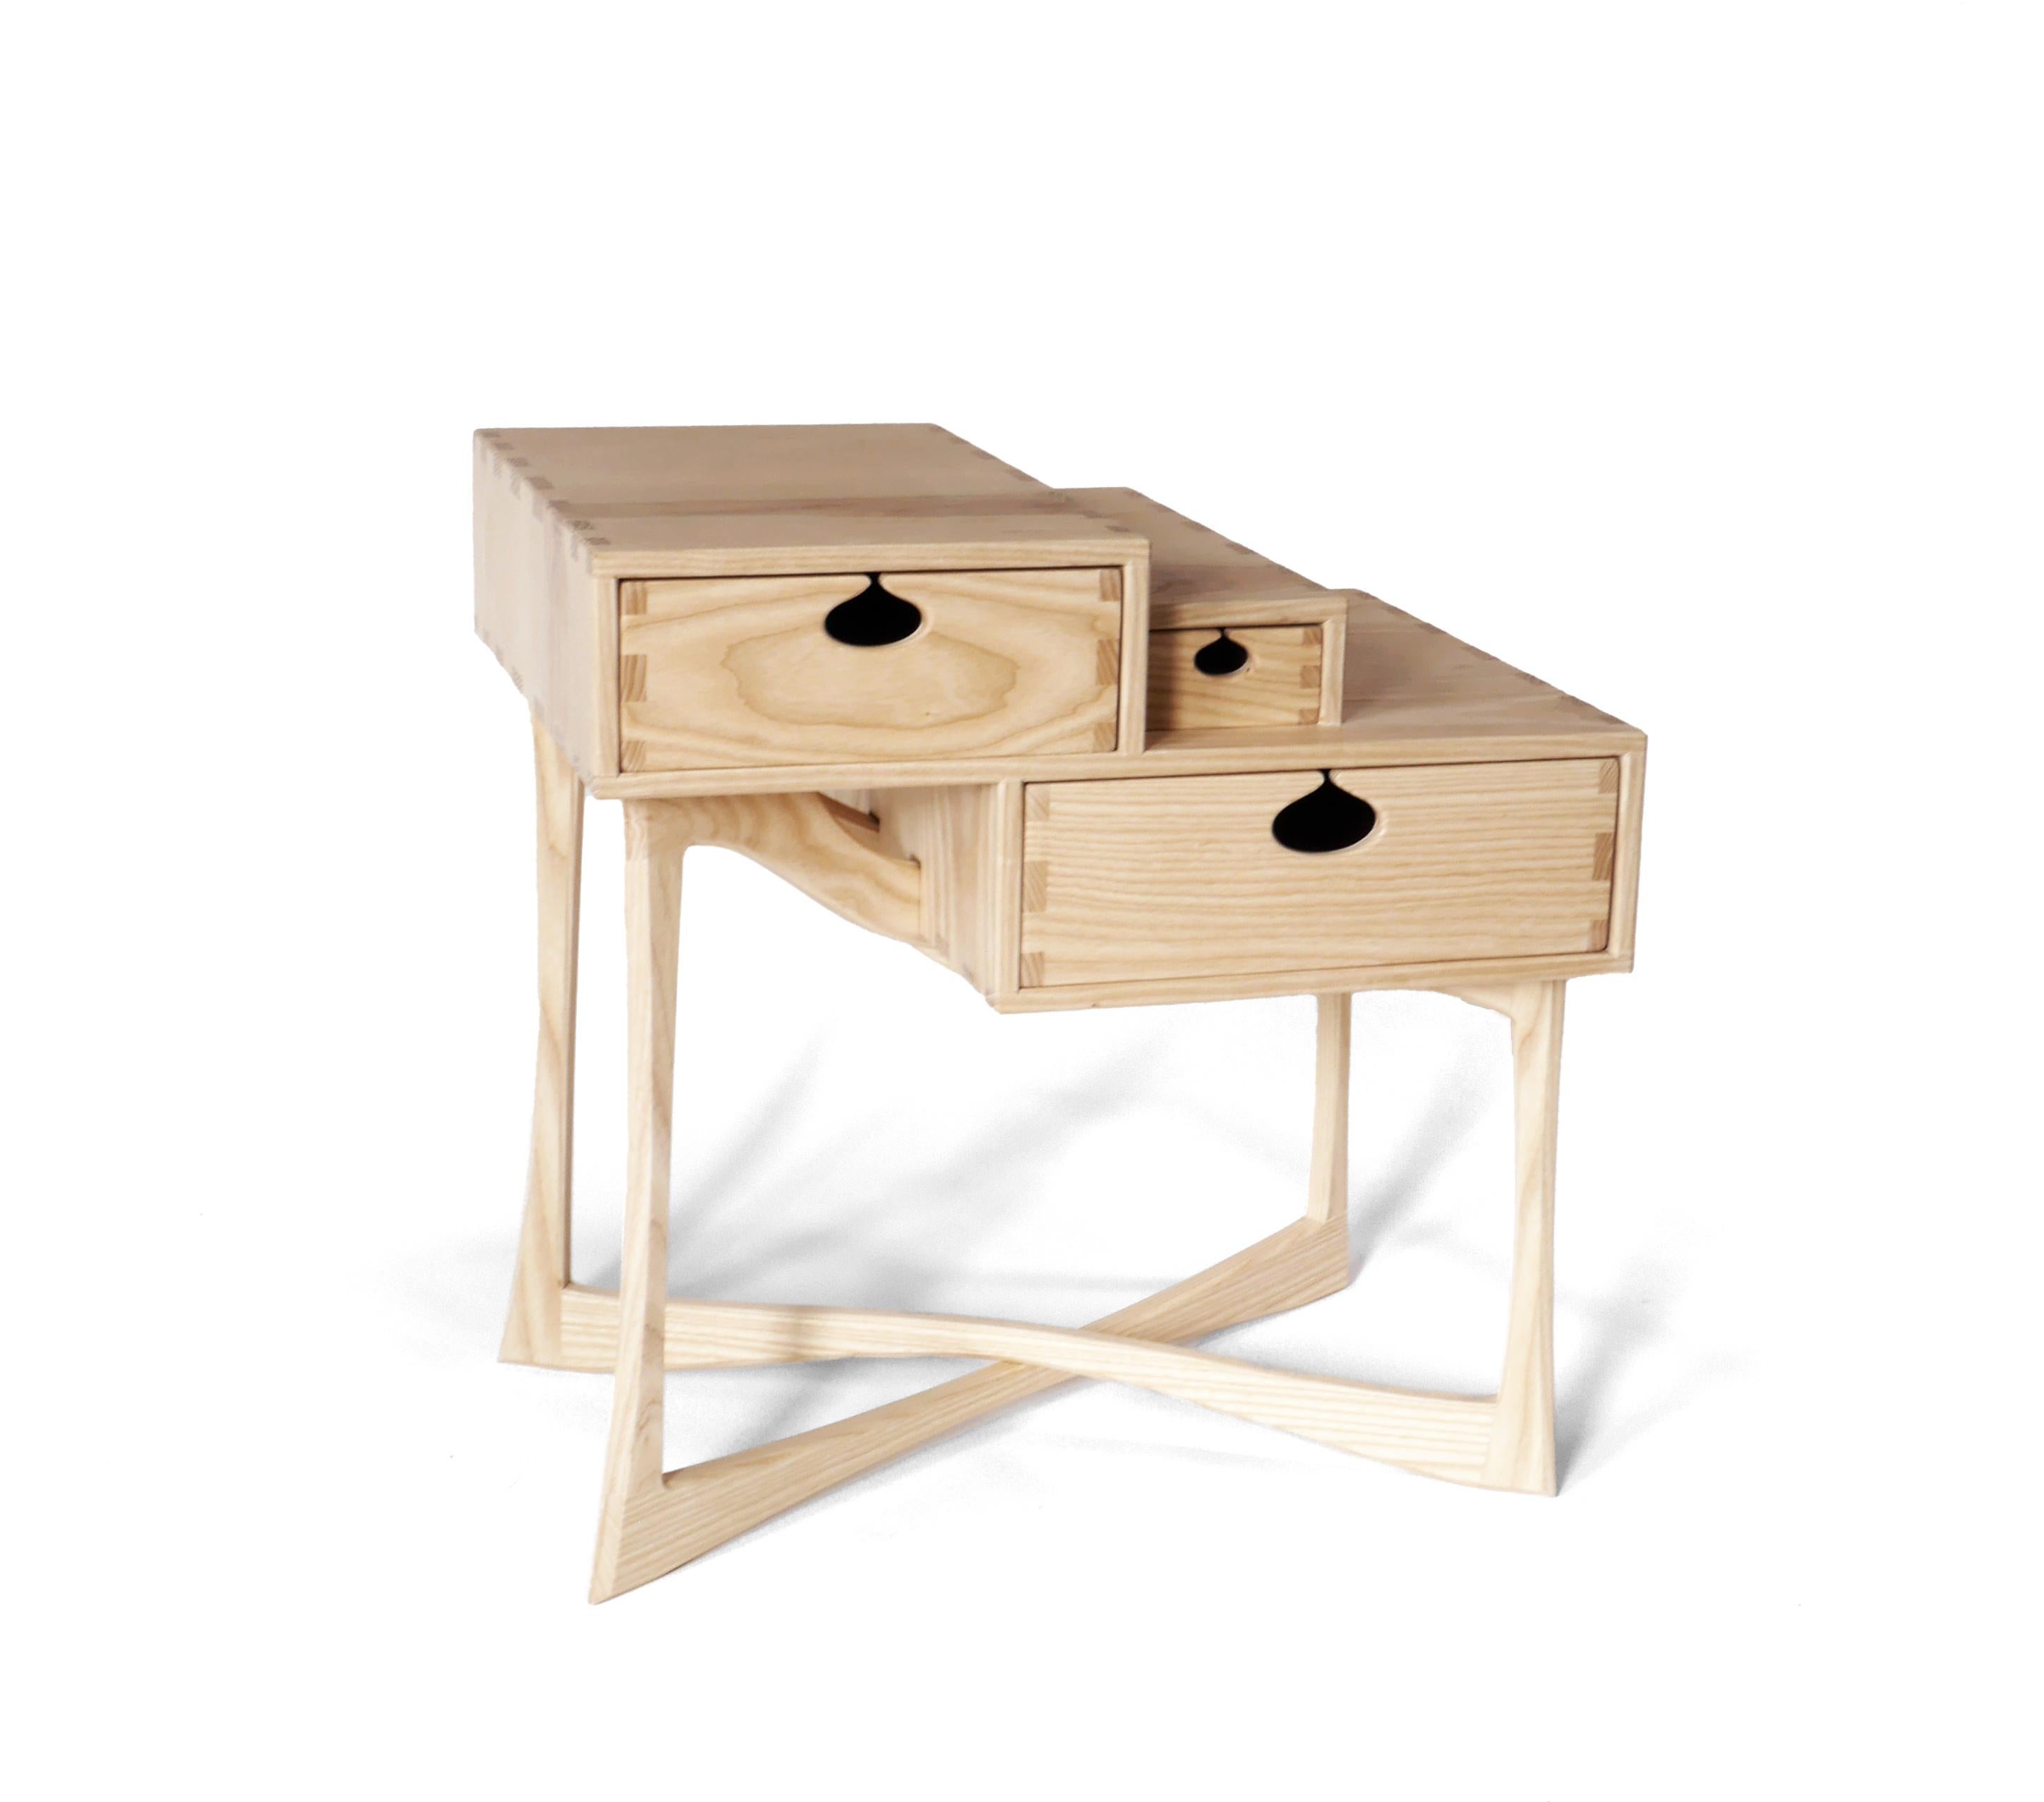 La table d'appoint charismatique Coriolis est fabriquée en frêne blanc massif et comporte trois tiroirs montés sur des glissières en bois dans des boîtes à tiroirs traditionnelles. Il est construit avec des menuiseries apparentes qui ont été